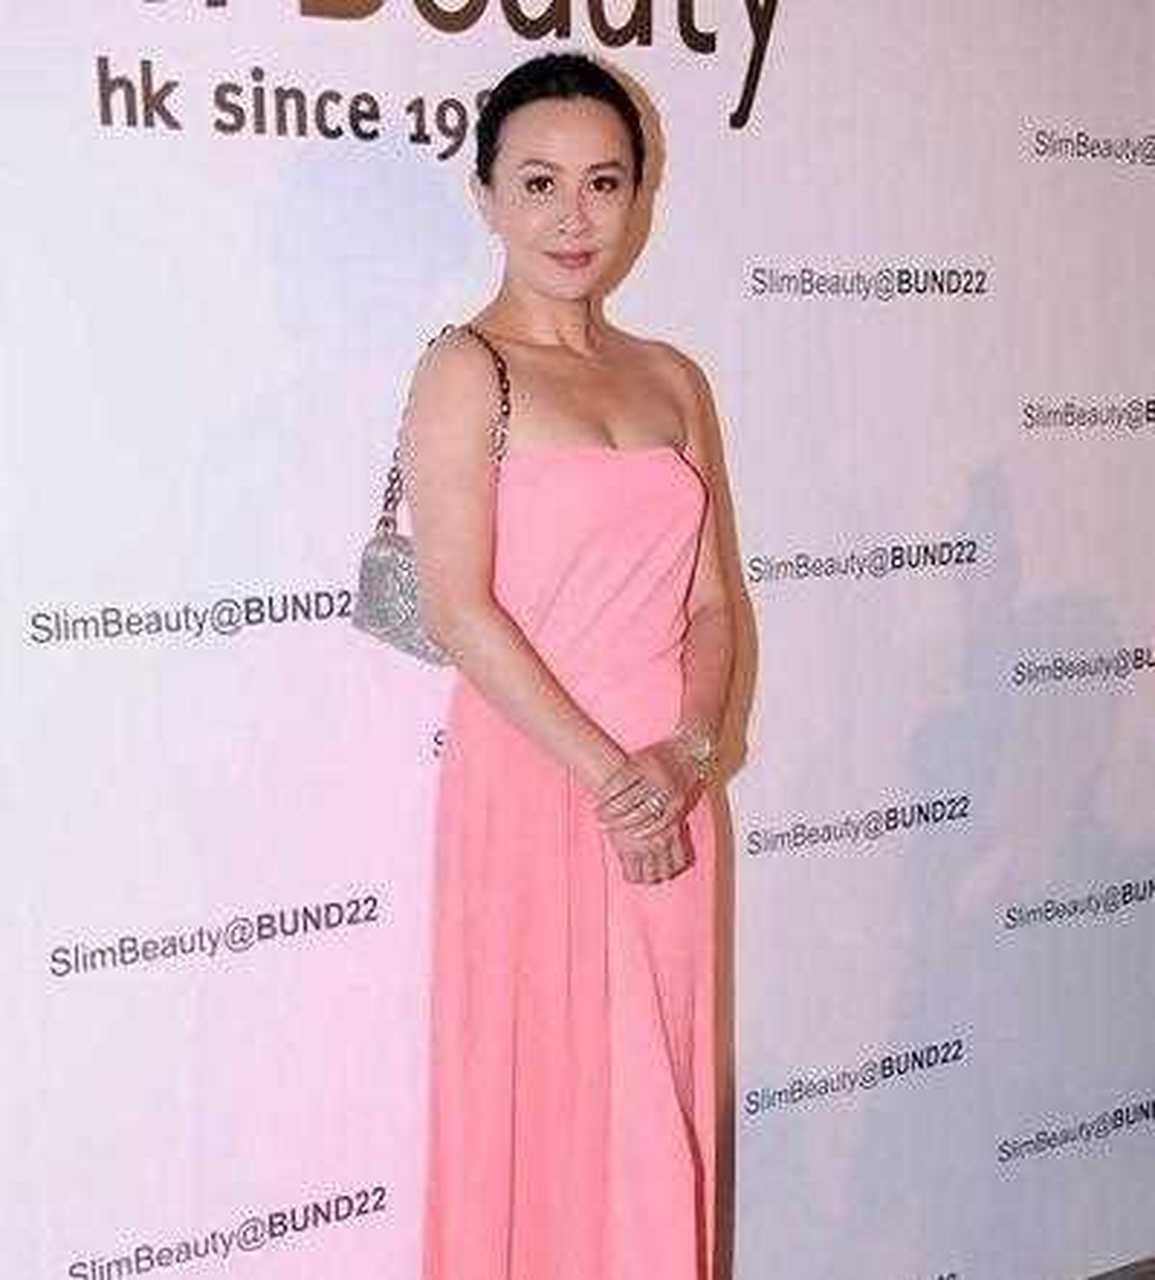 刘嘉玲今年都54岁了,还穿着粉色的抹胸裙,看来真的是不服老呀一般上了